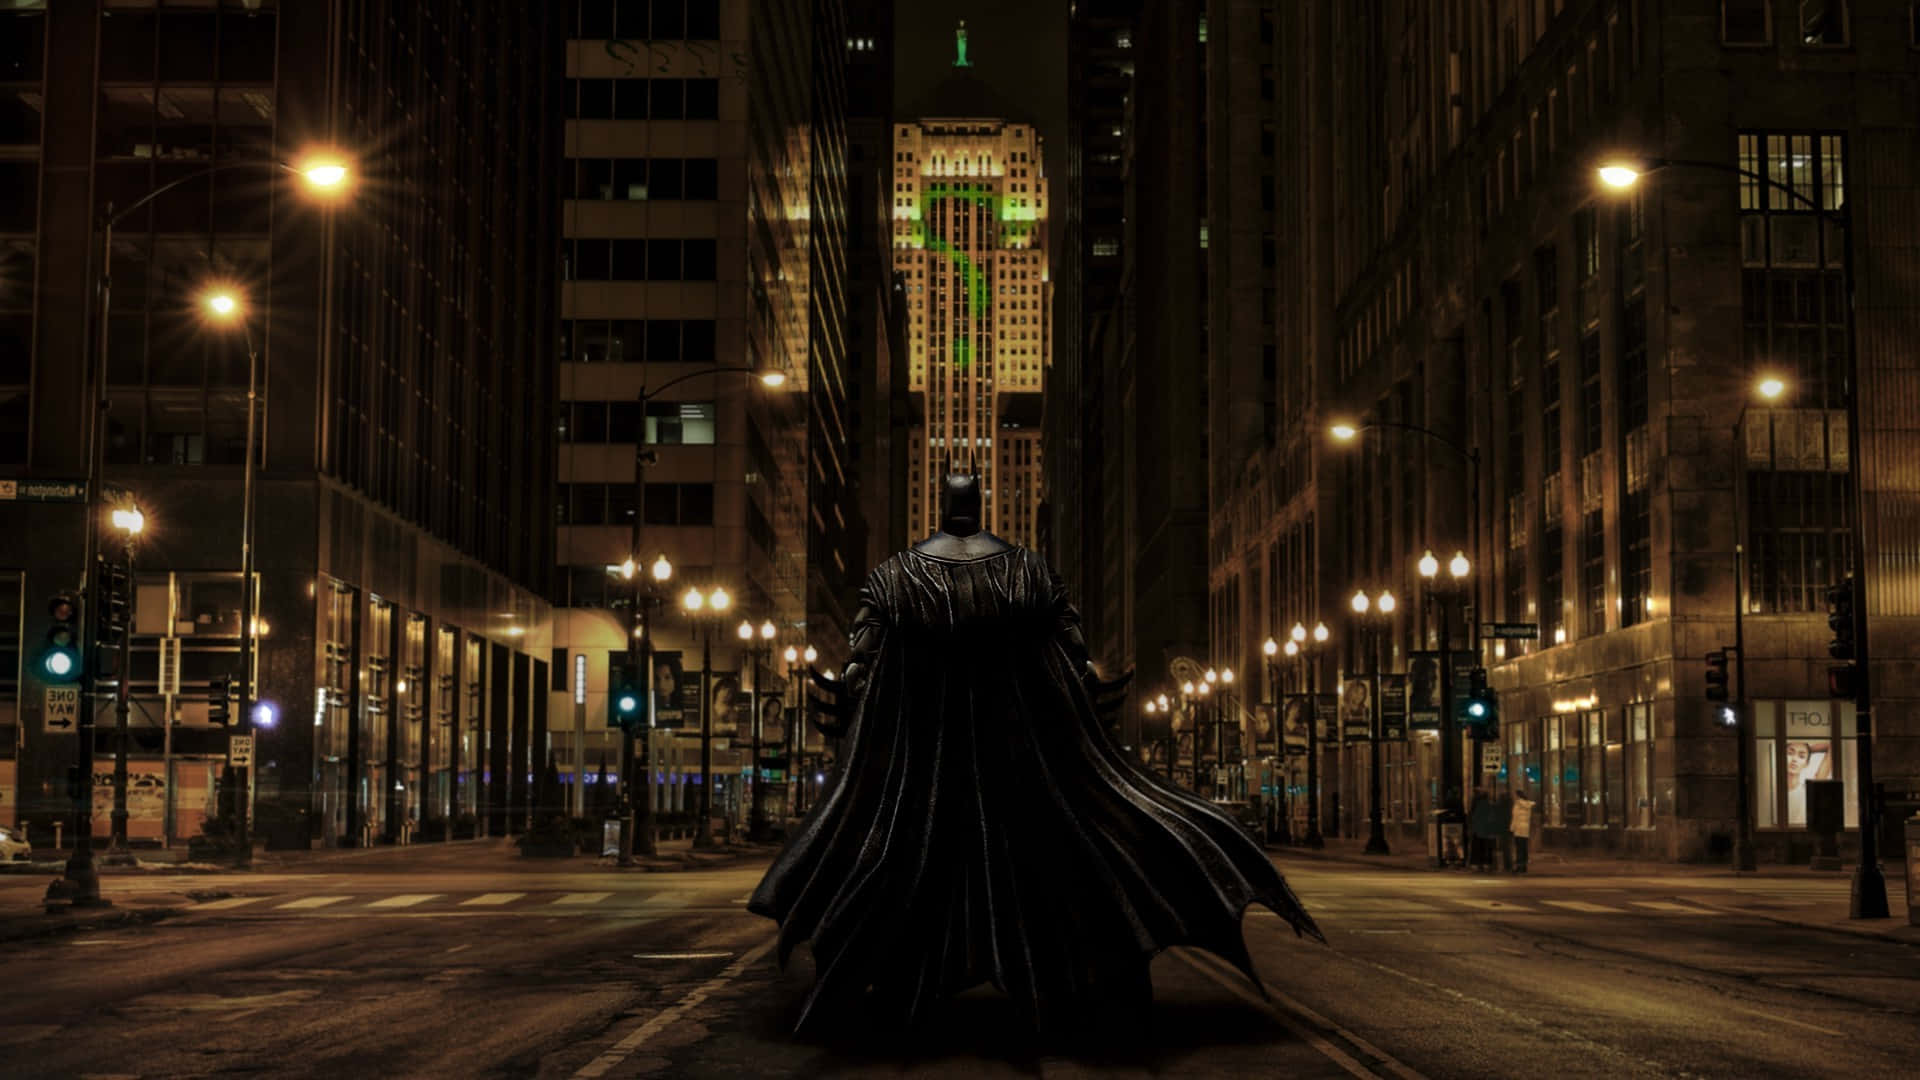 Travlhedenog Virakken I Gotham City, Hjemstedet For Den Berømte Batman. Wallpaper